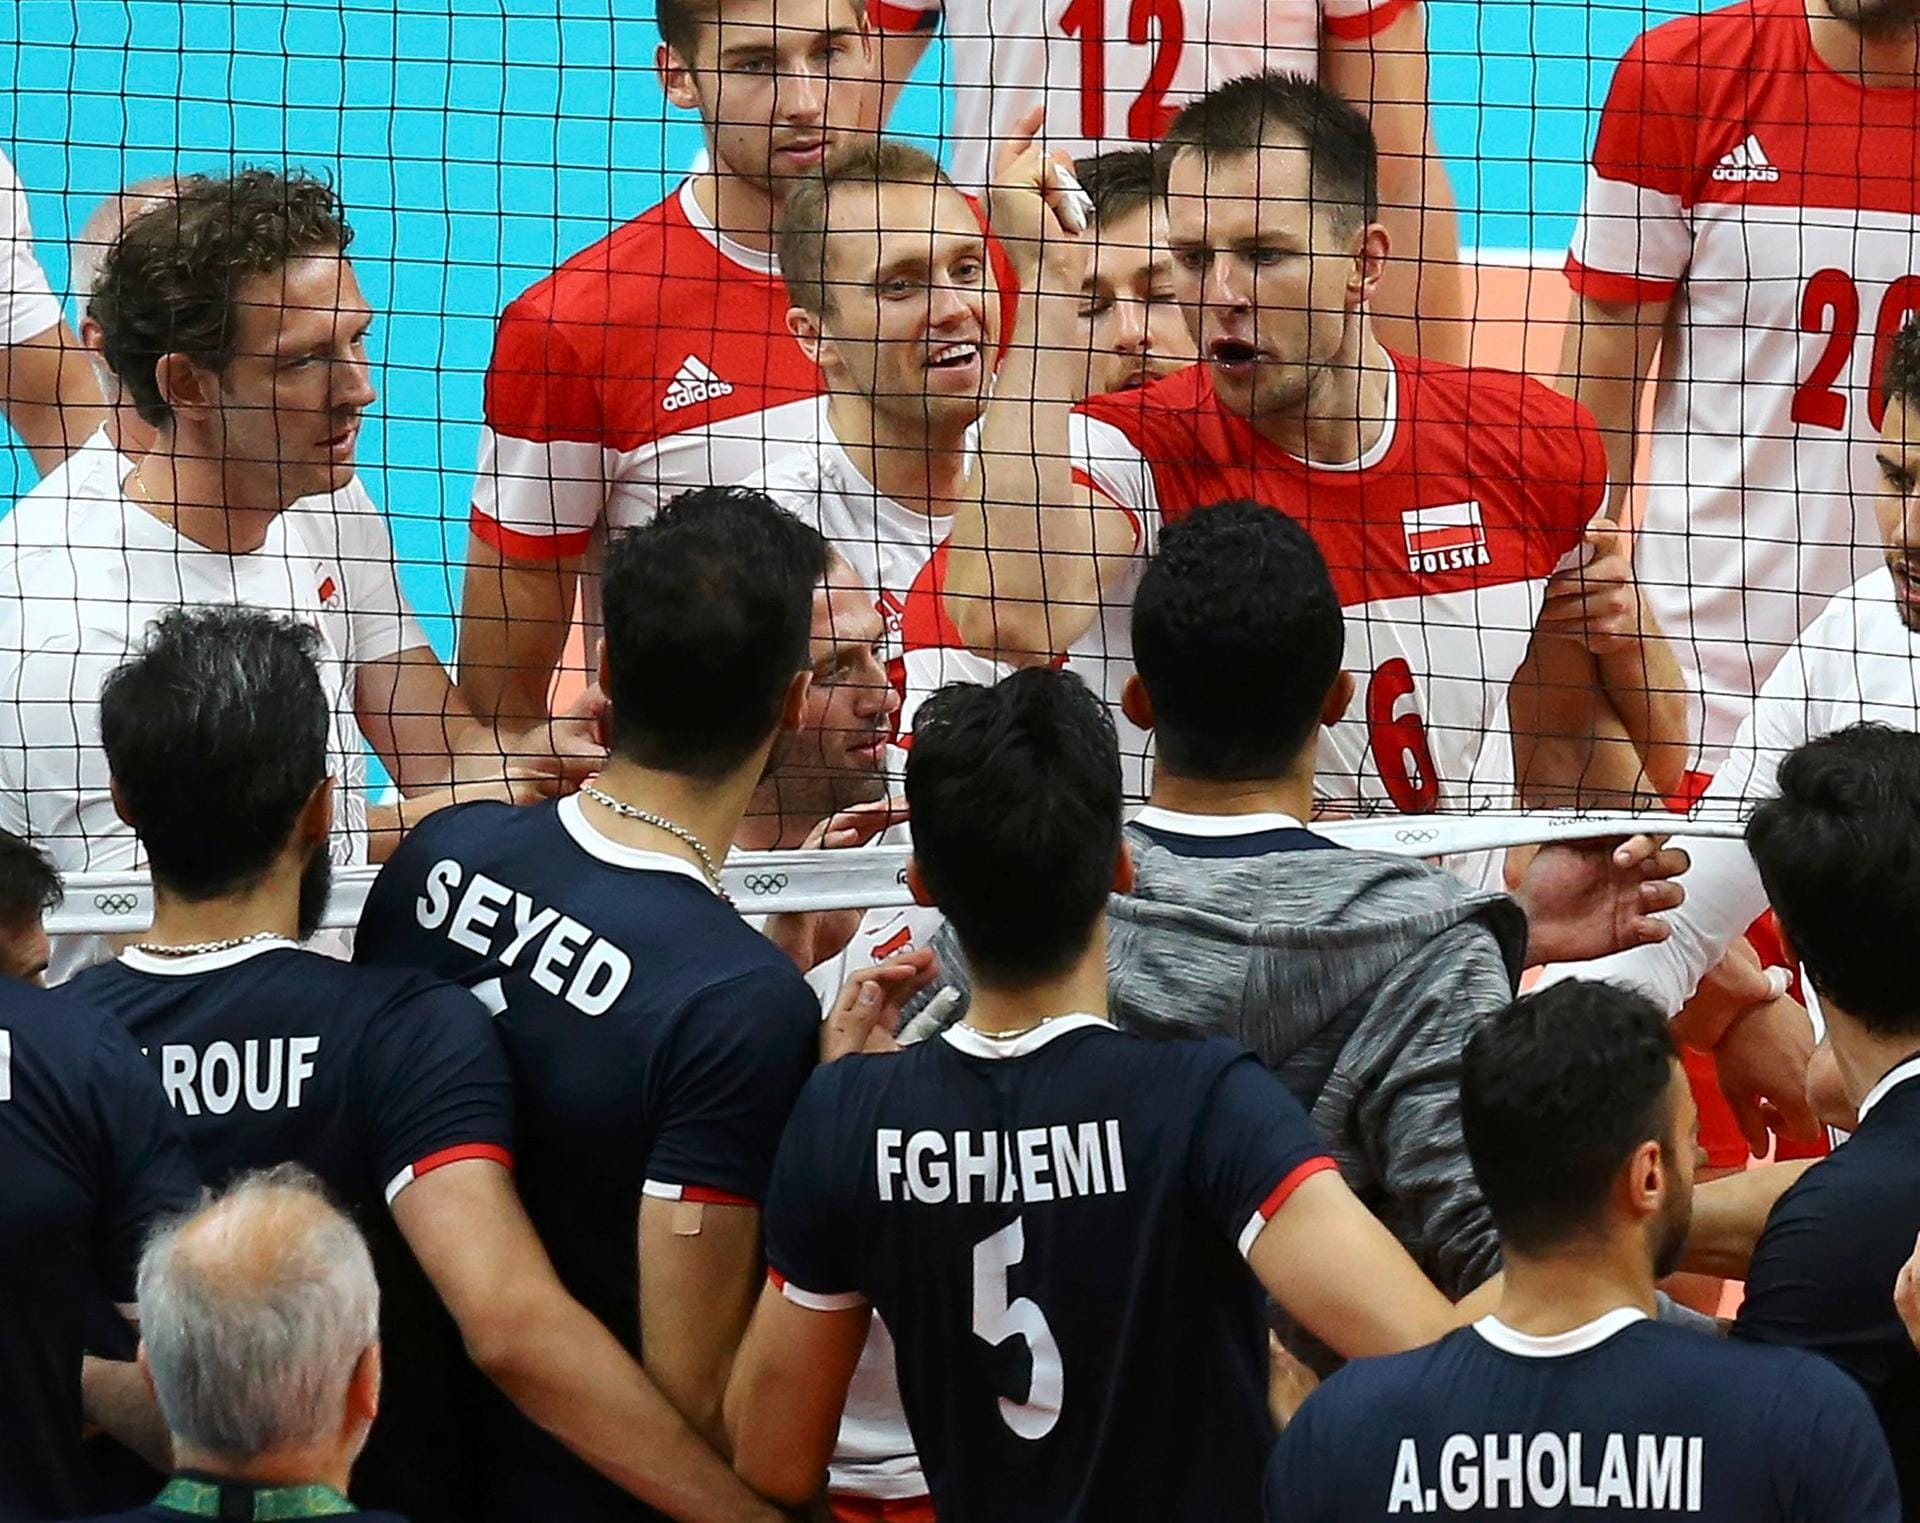 Diskussionsbedarf gibt es beim Volleyball zwischen den Teams von Polen und dem Iran.